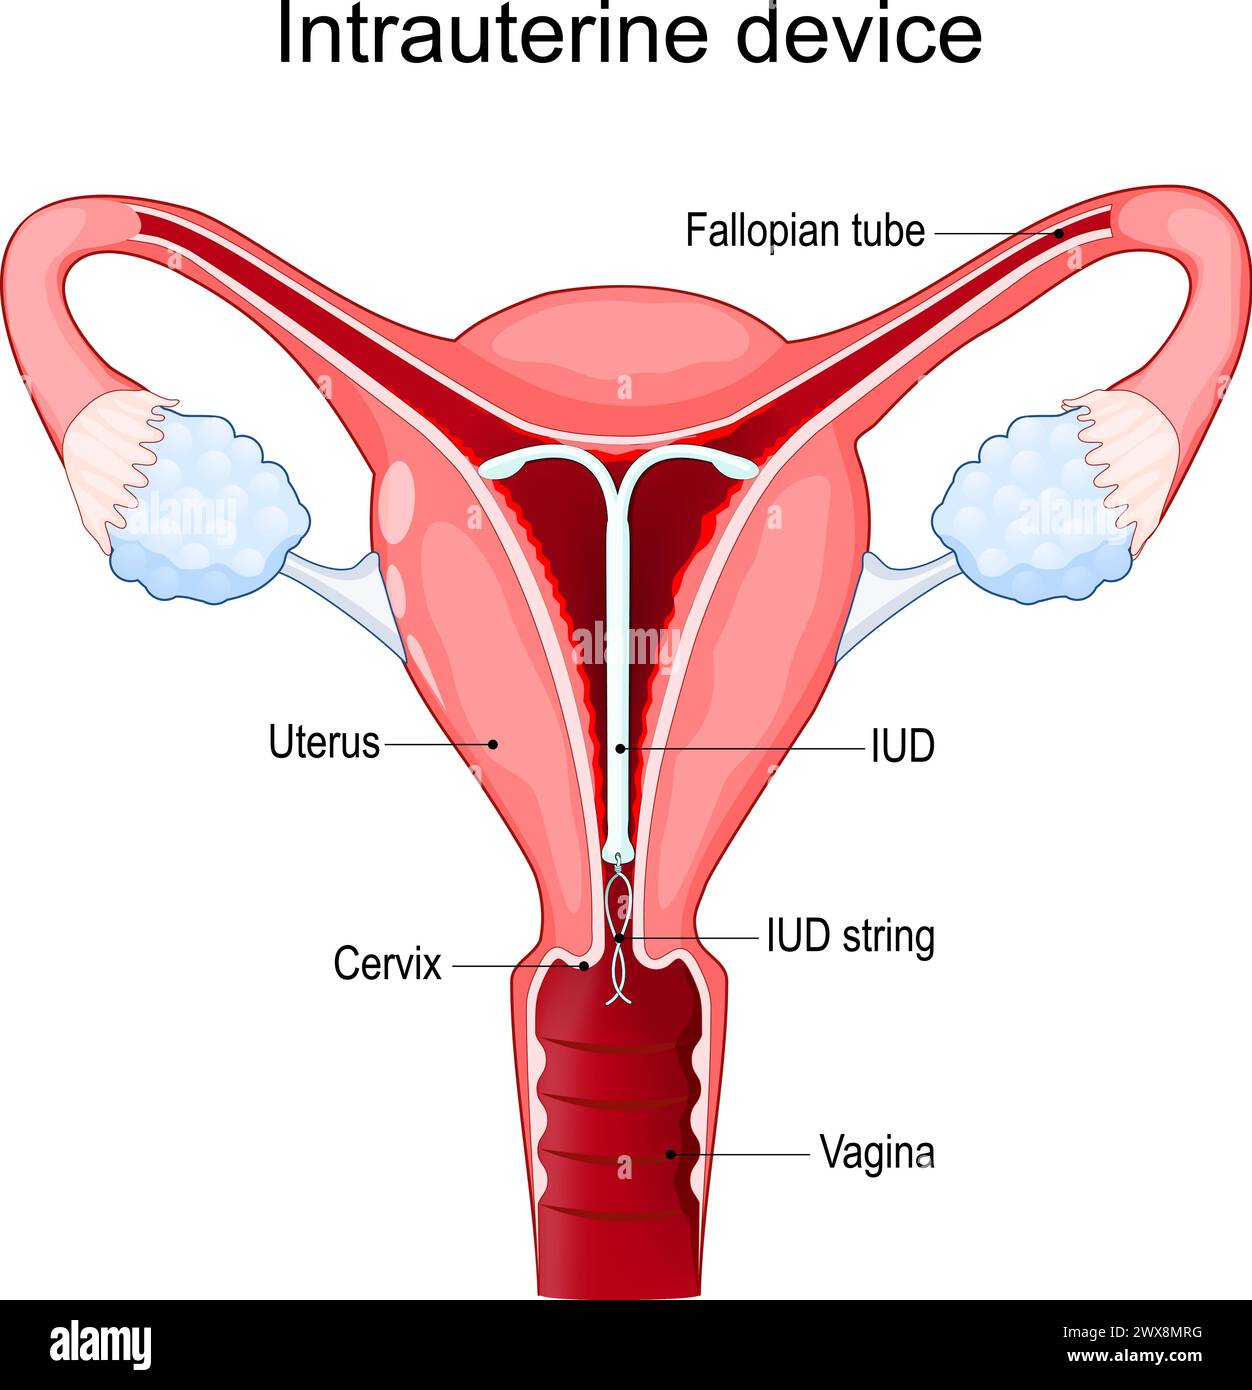 Intrauterines Gerät oder Spule. IUD. Intrauterine Kontrazeptiva zur Geburtenkontrolle. Querschnitt eines menschlichen Uterus mit IUCD oder ICD im Inneren. Vektor Stock Vektor